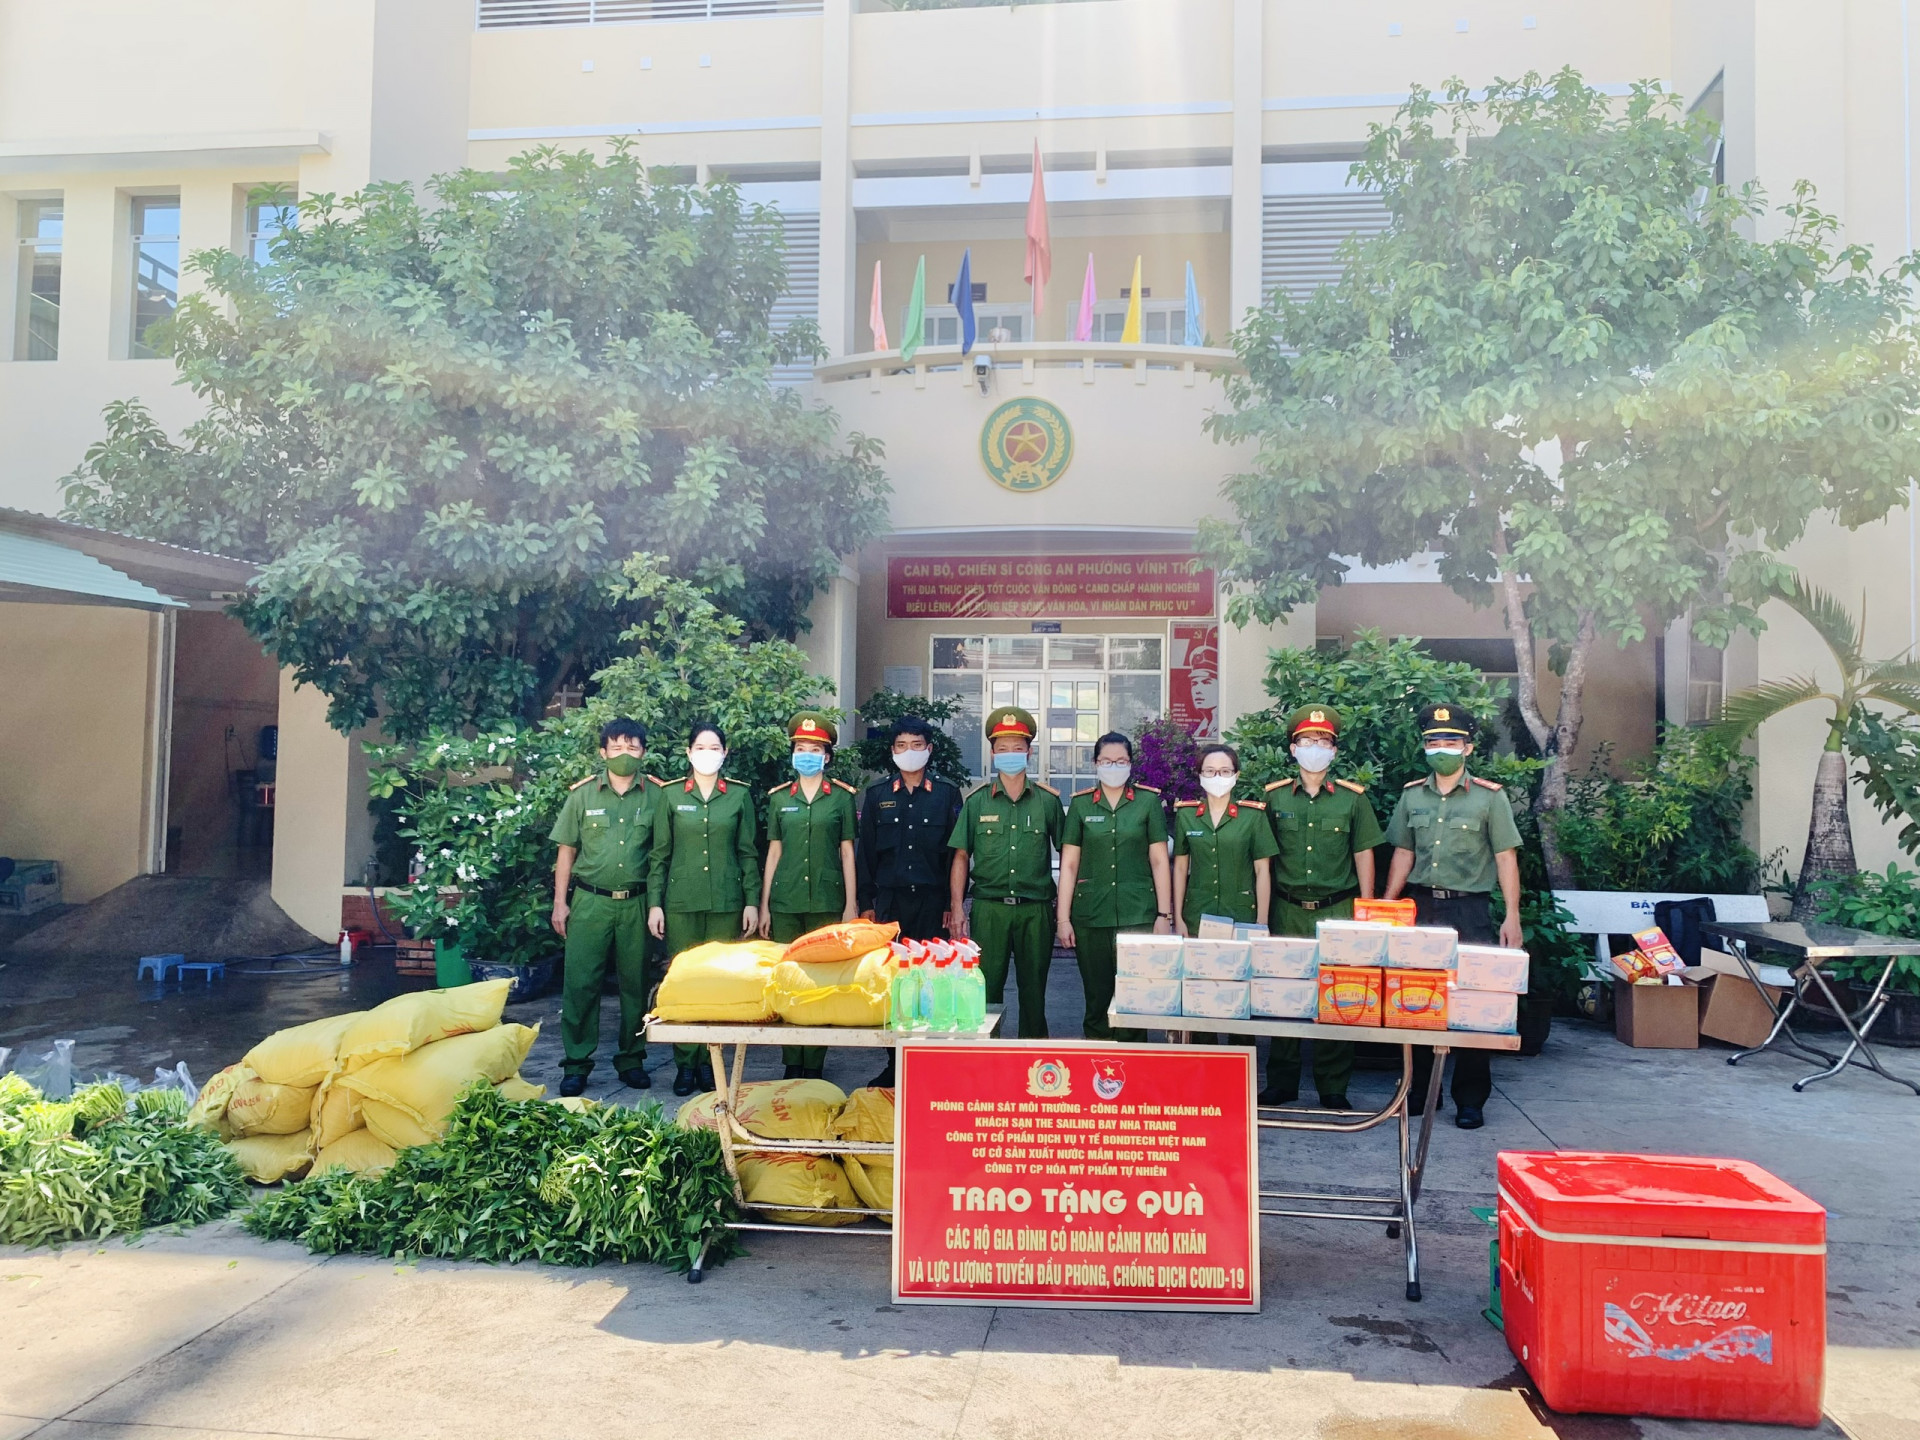 Thay mặt người dân, Công an phường Vĩnh Thọ nhận quà của Phòng Cảnh sát Môi trường và các doanh nghiệp